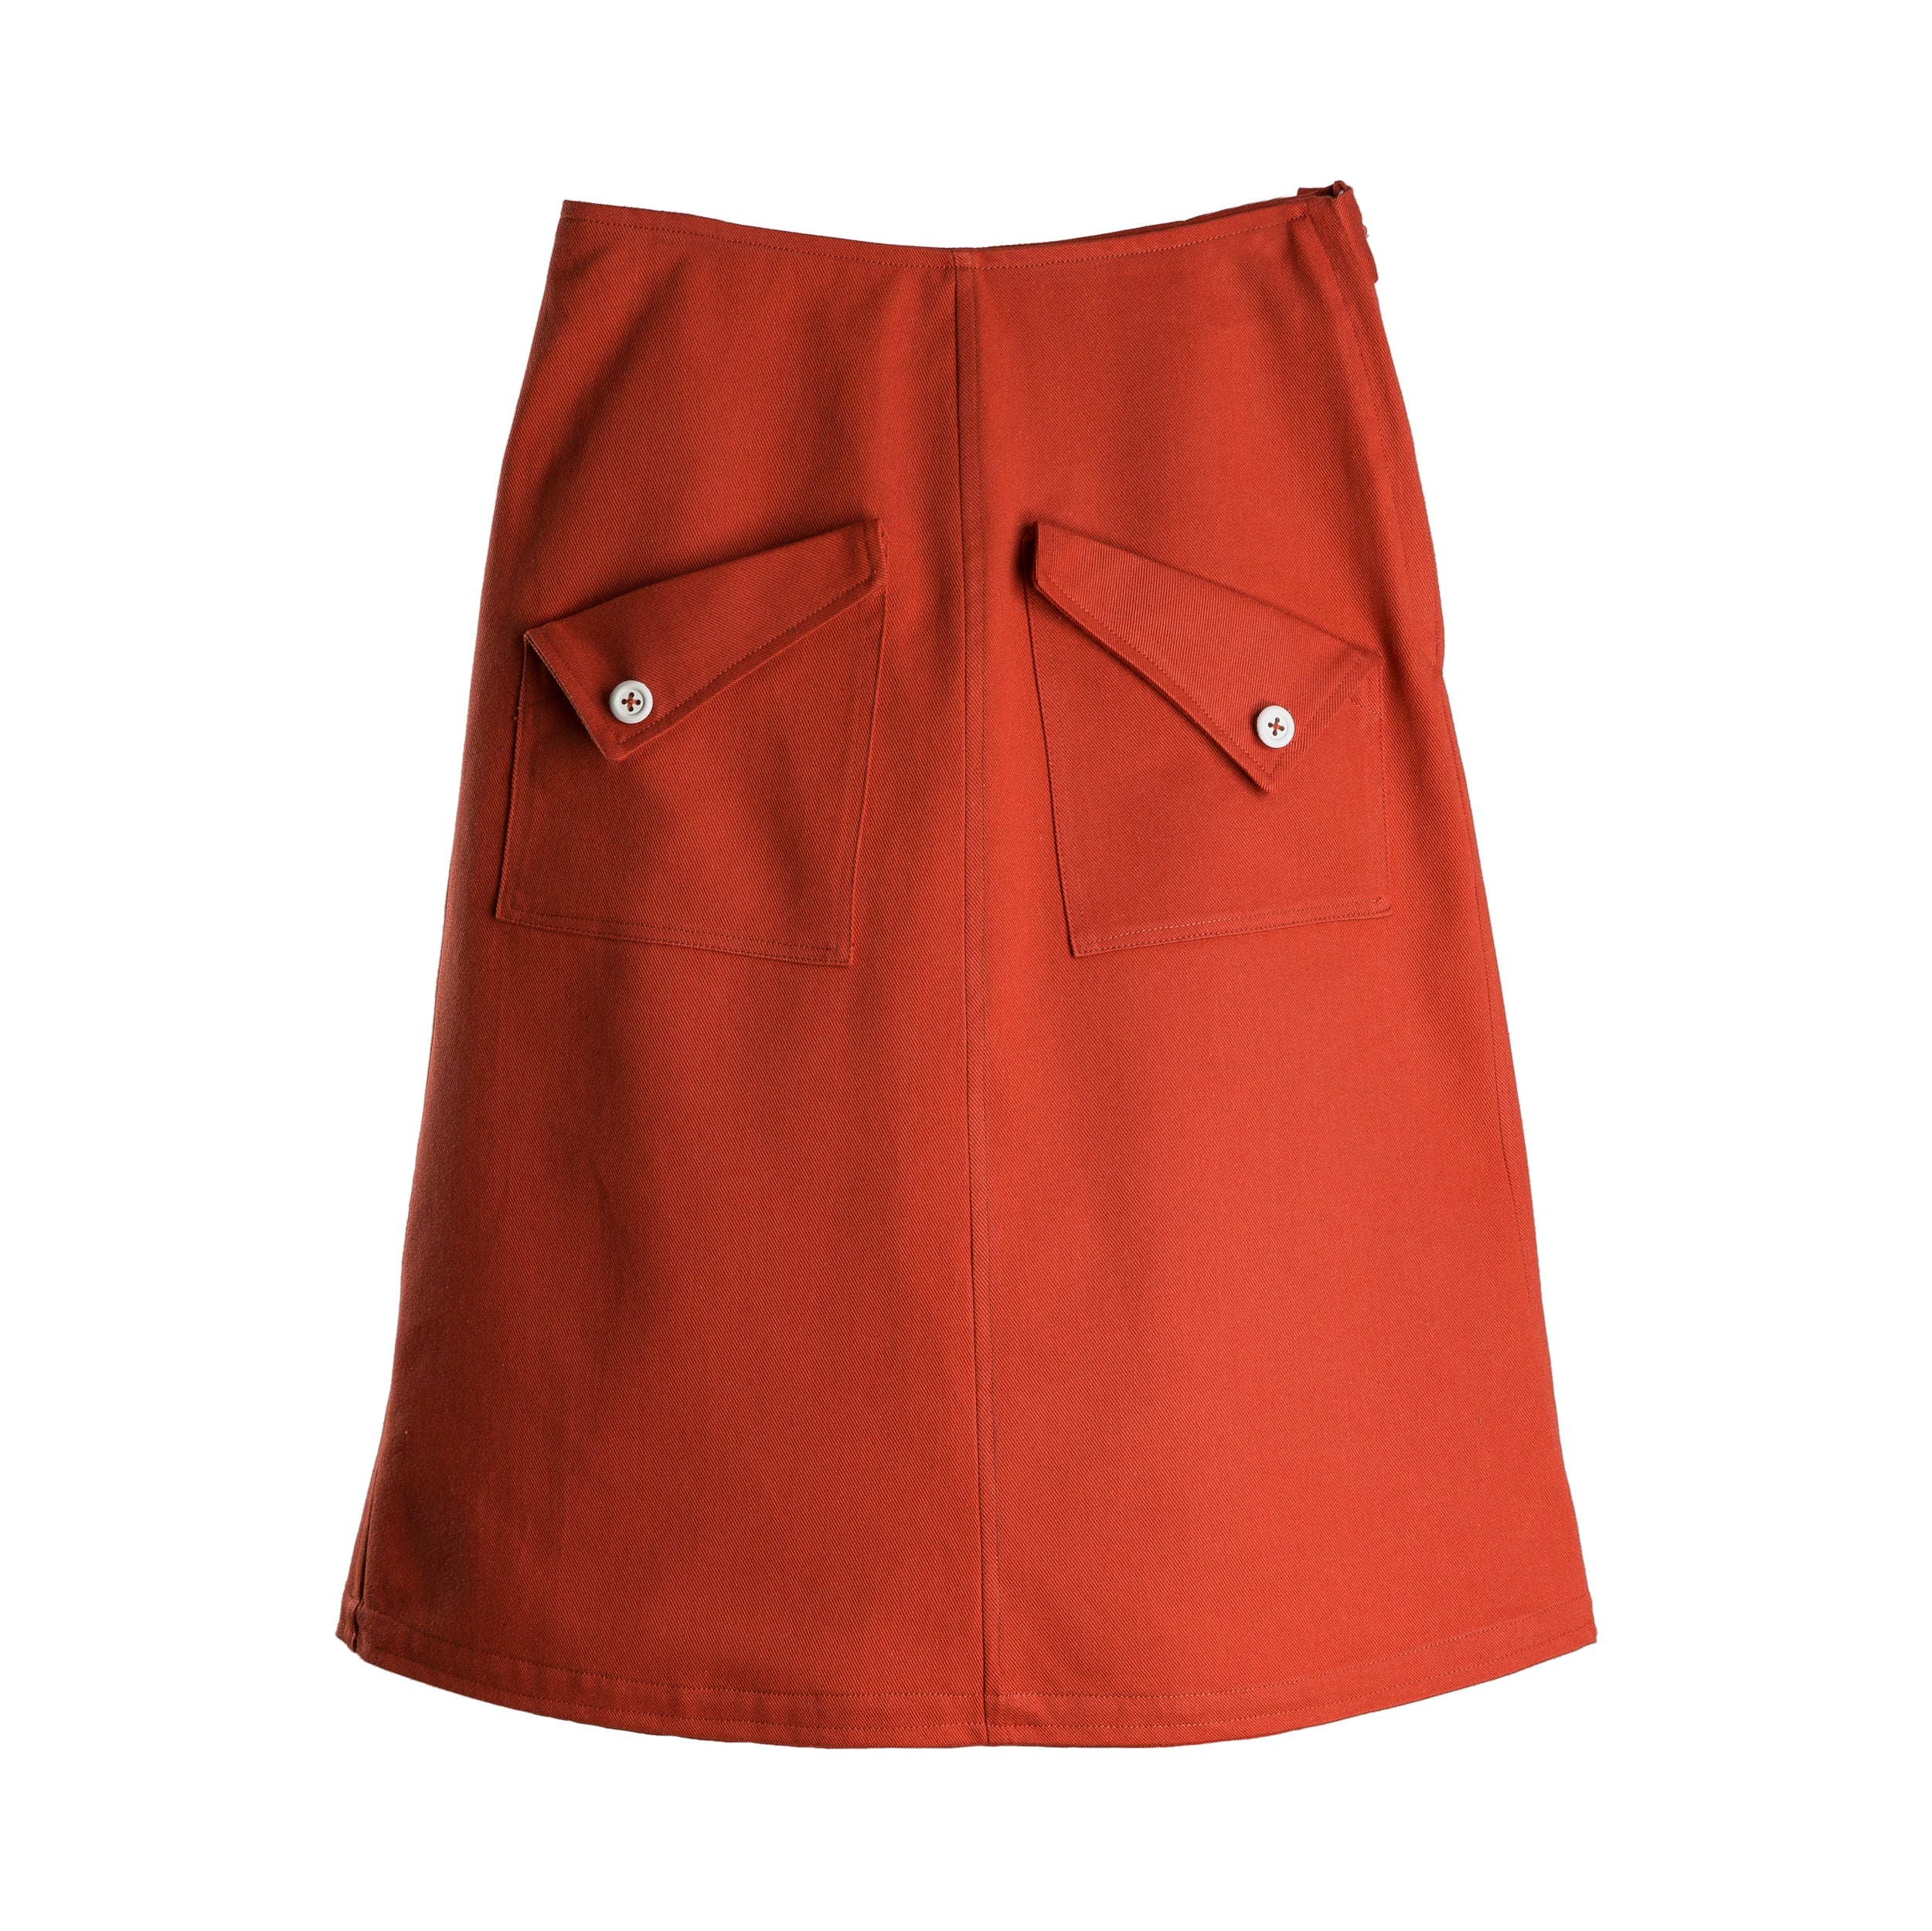 Carrier Company Mum Skirt in Orange